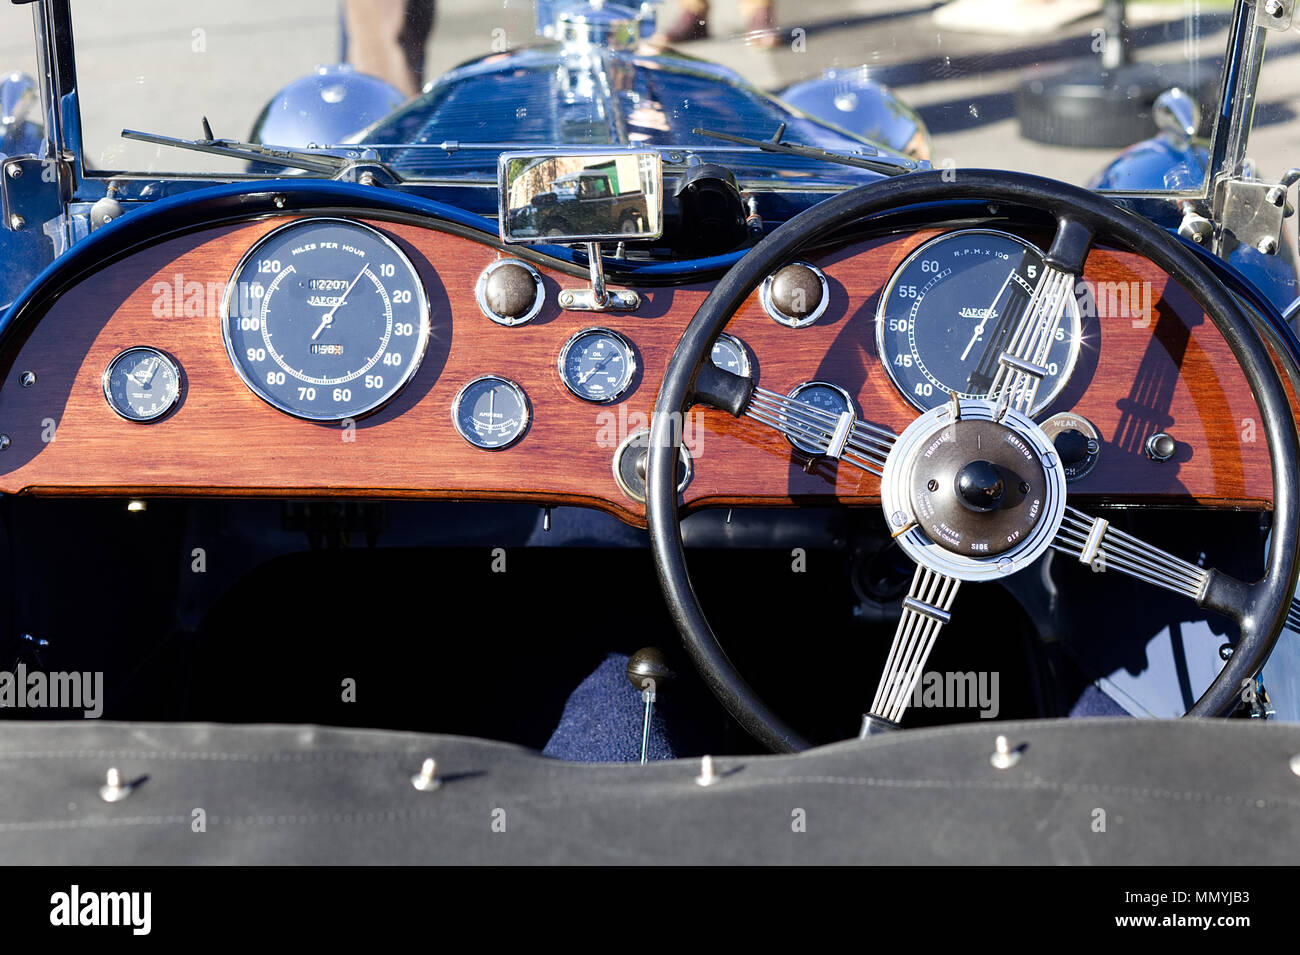 Tableau de bord en bois sur une voiture vintage britannique Banque D'Images